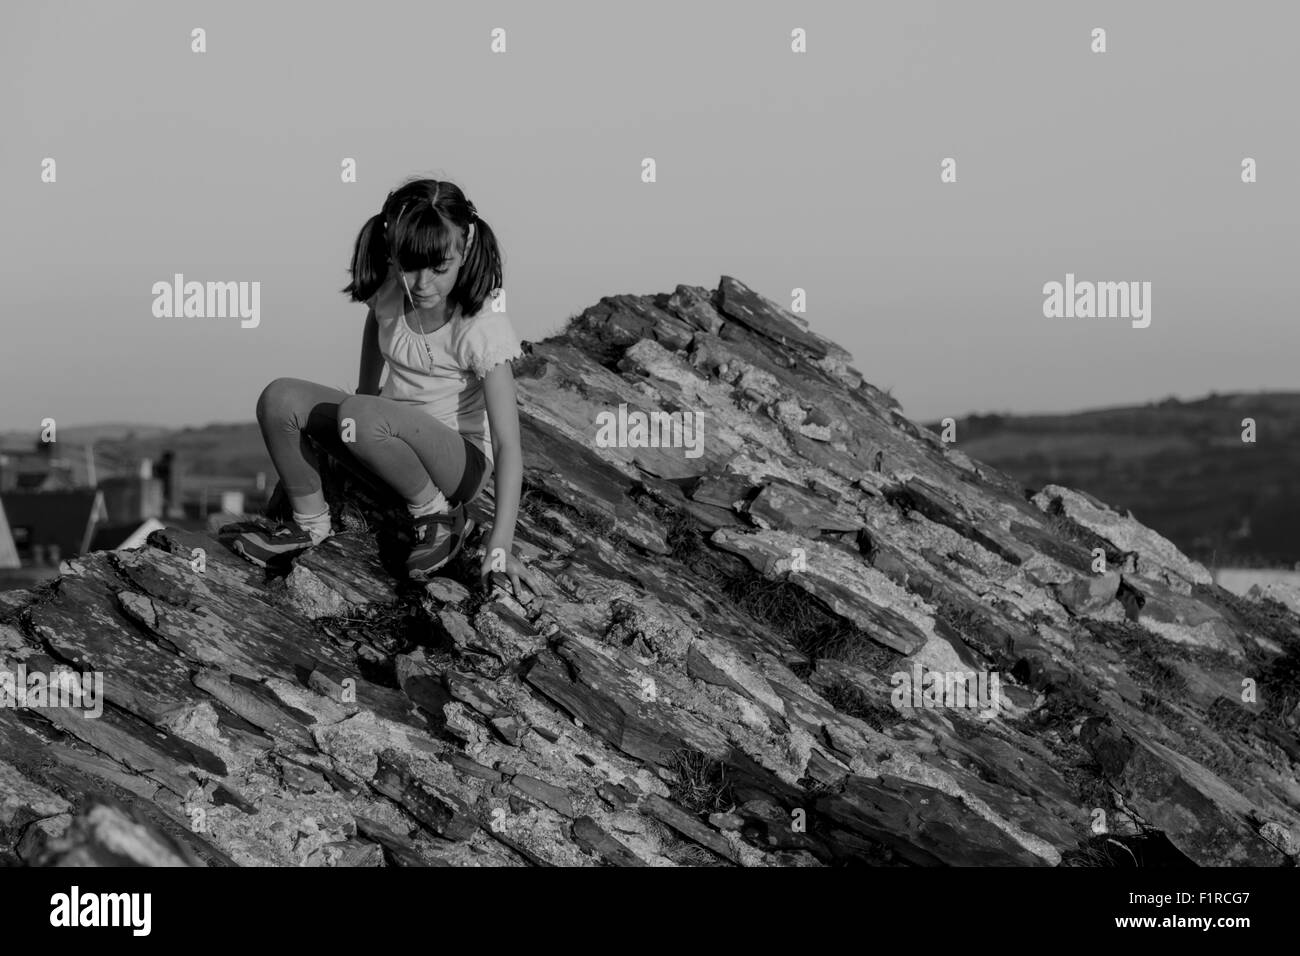 Pretty young girl climbing over a rock face Stock Photo